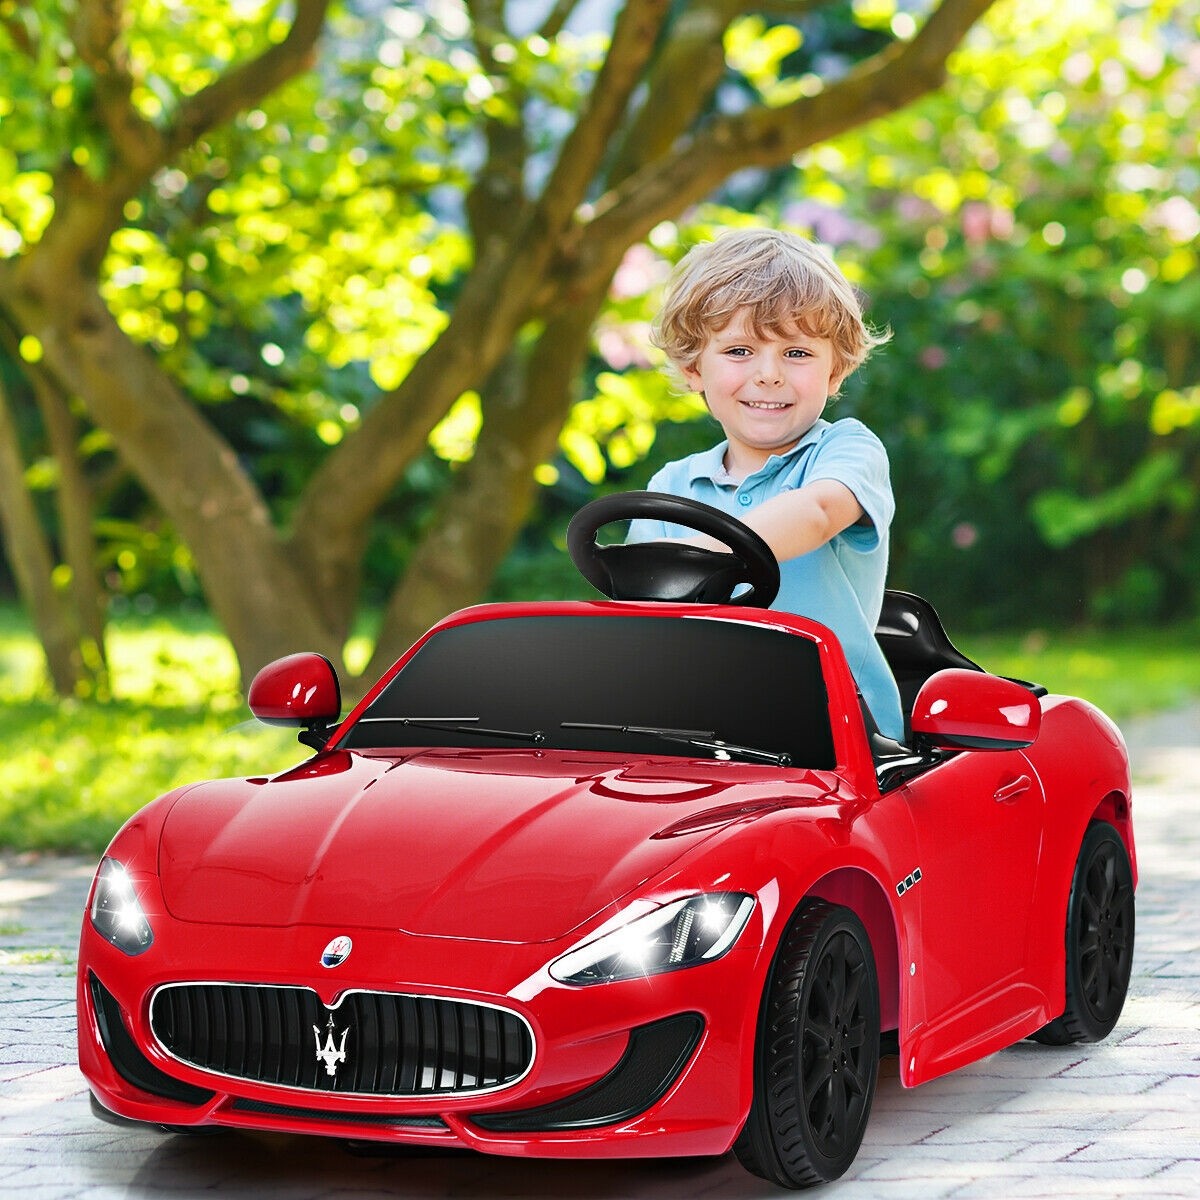 Maserati 12 V Licensed Electric Kids Riding Car